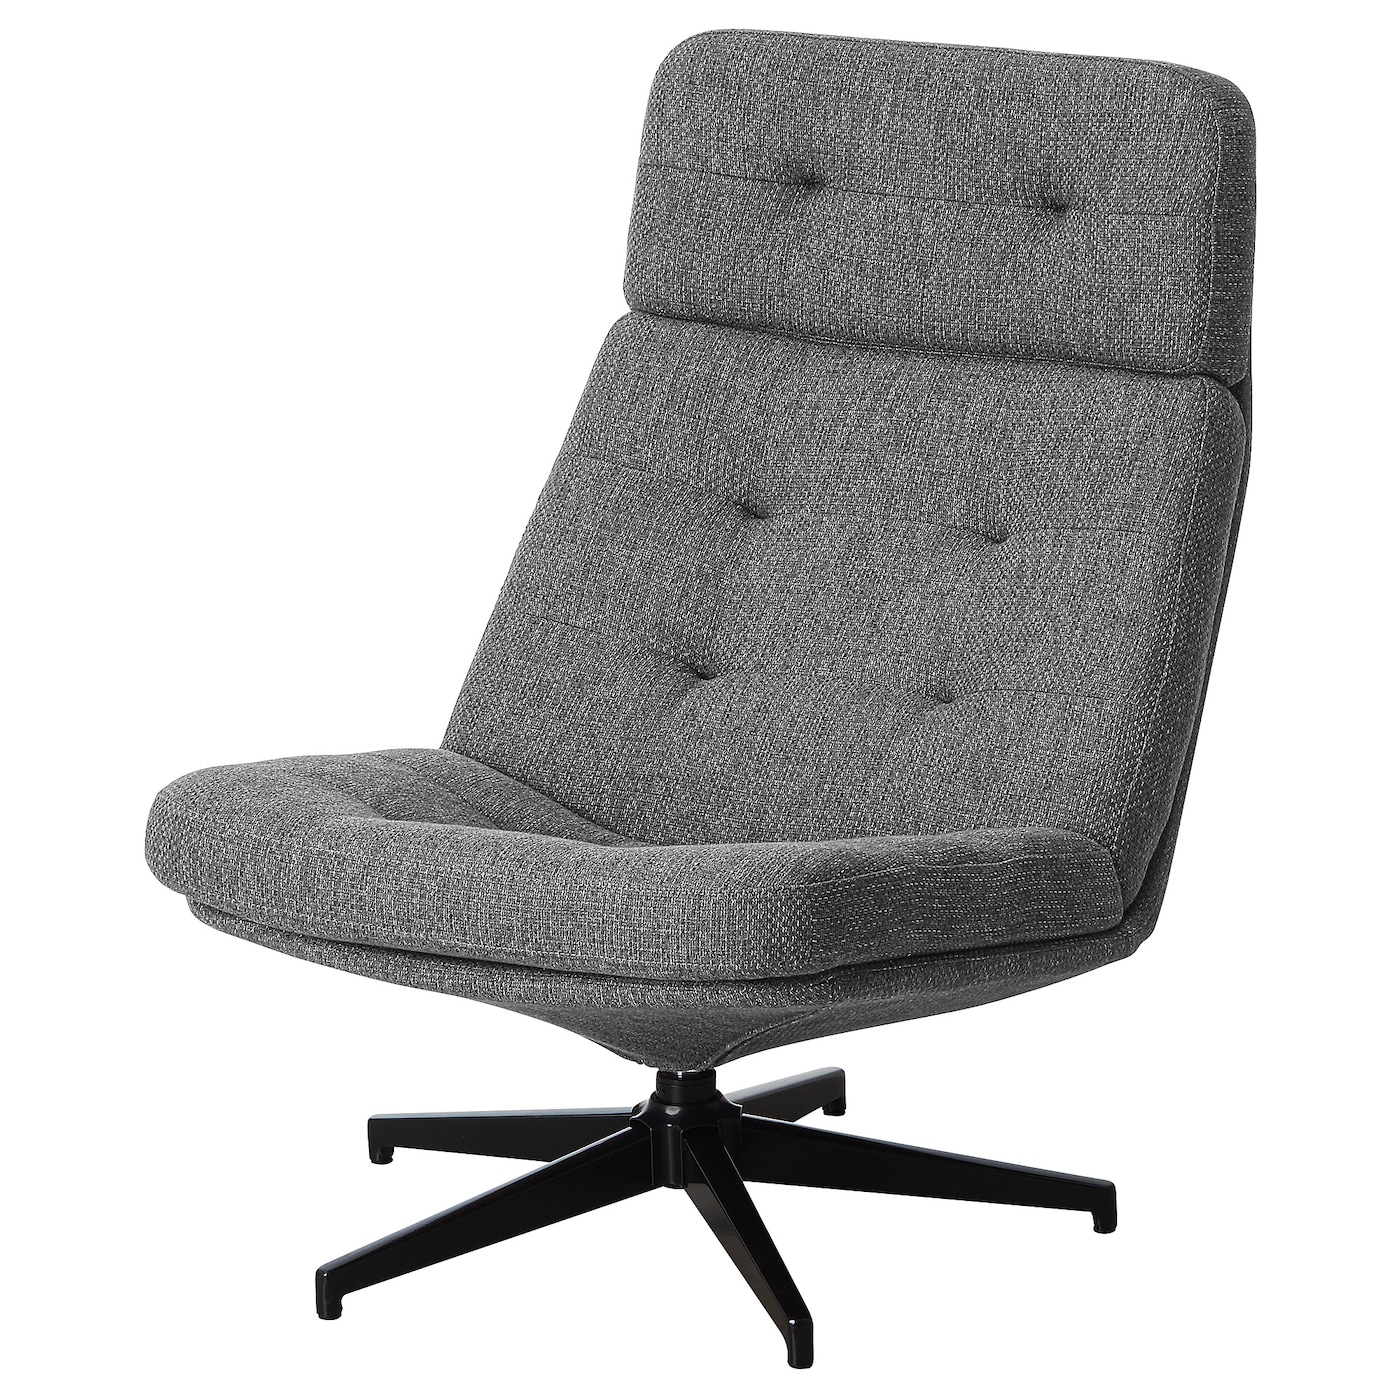 ХАВБЕРГ Вращающееся кресло, Лейде серый/черный HAVBERG IKEA офисное кресло массажное игровое кресло с rgb подсветкой эргономичное кресло для геймеров вращающееся кресло для студенческого компьютера